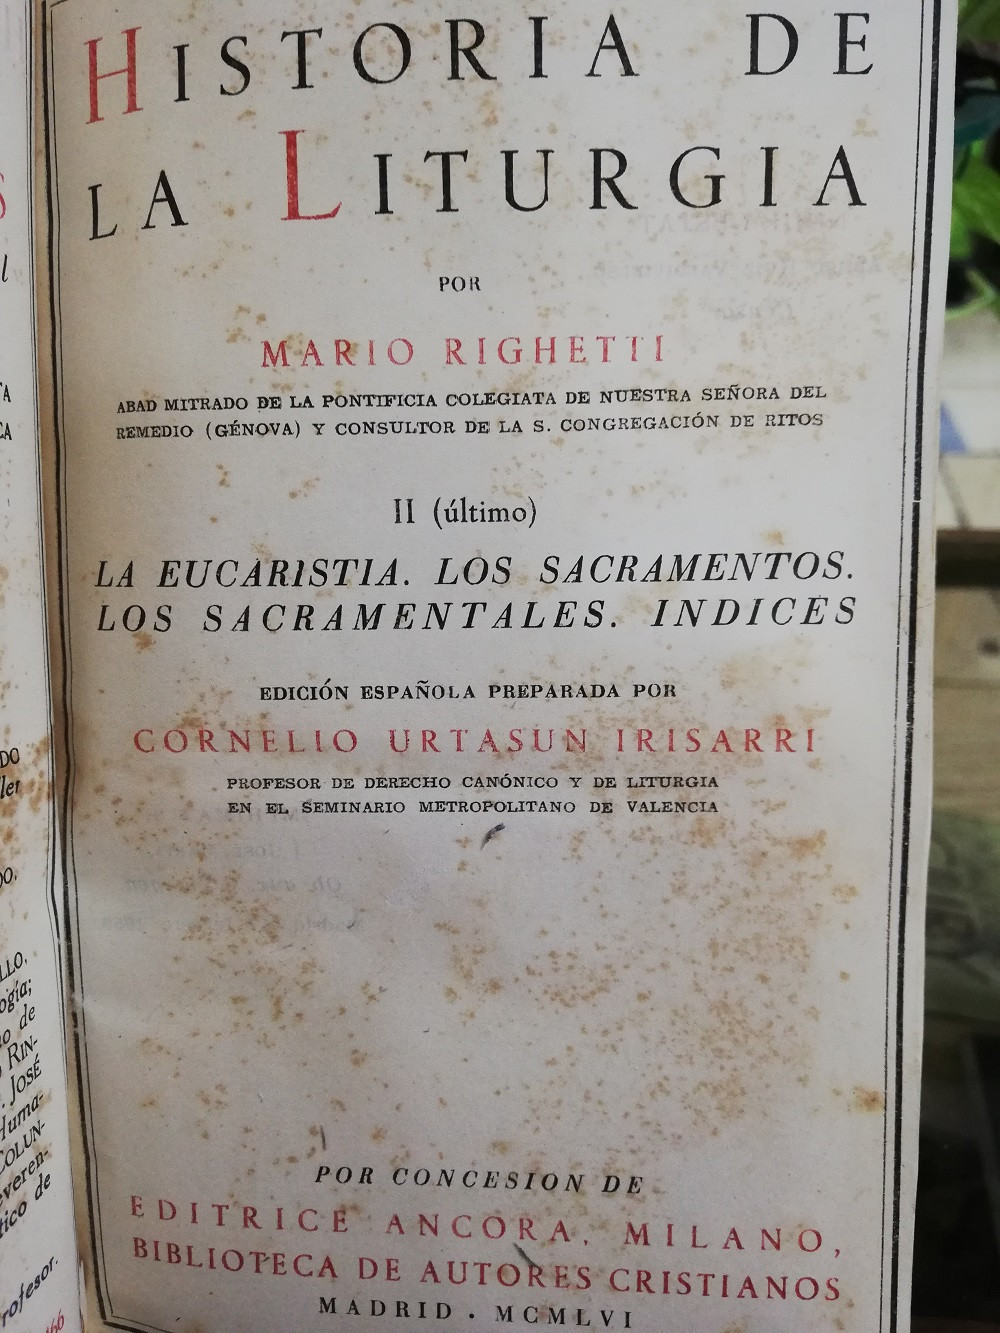 Imagen HISTORIA DE LA LITURGIA - MARIO RIGHETTI 4